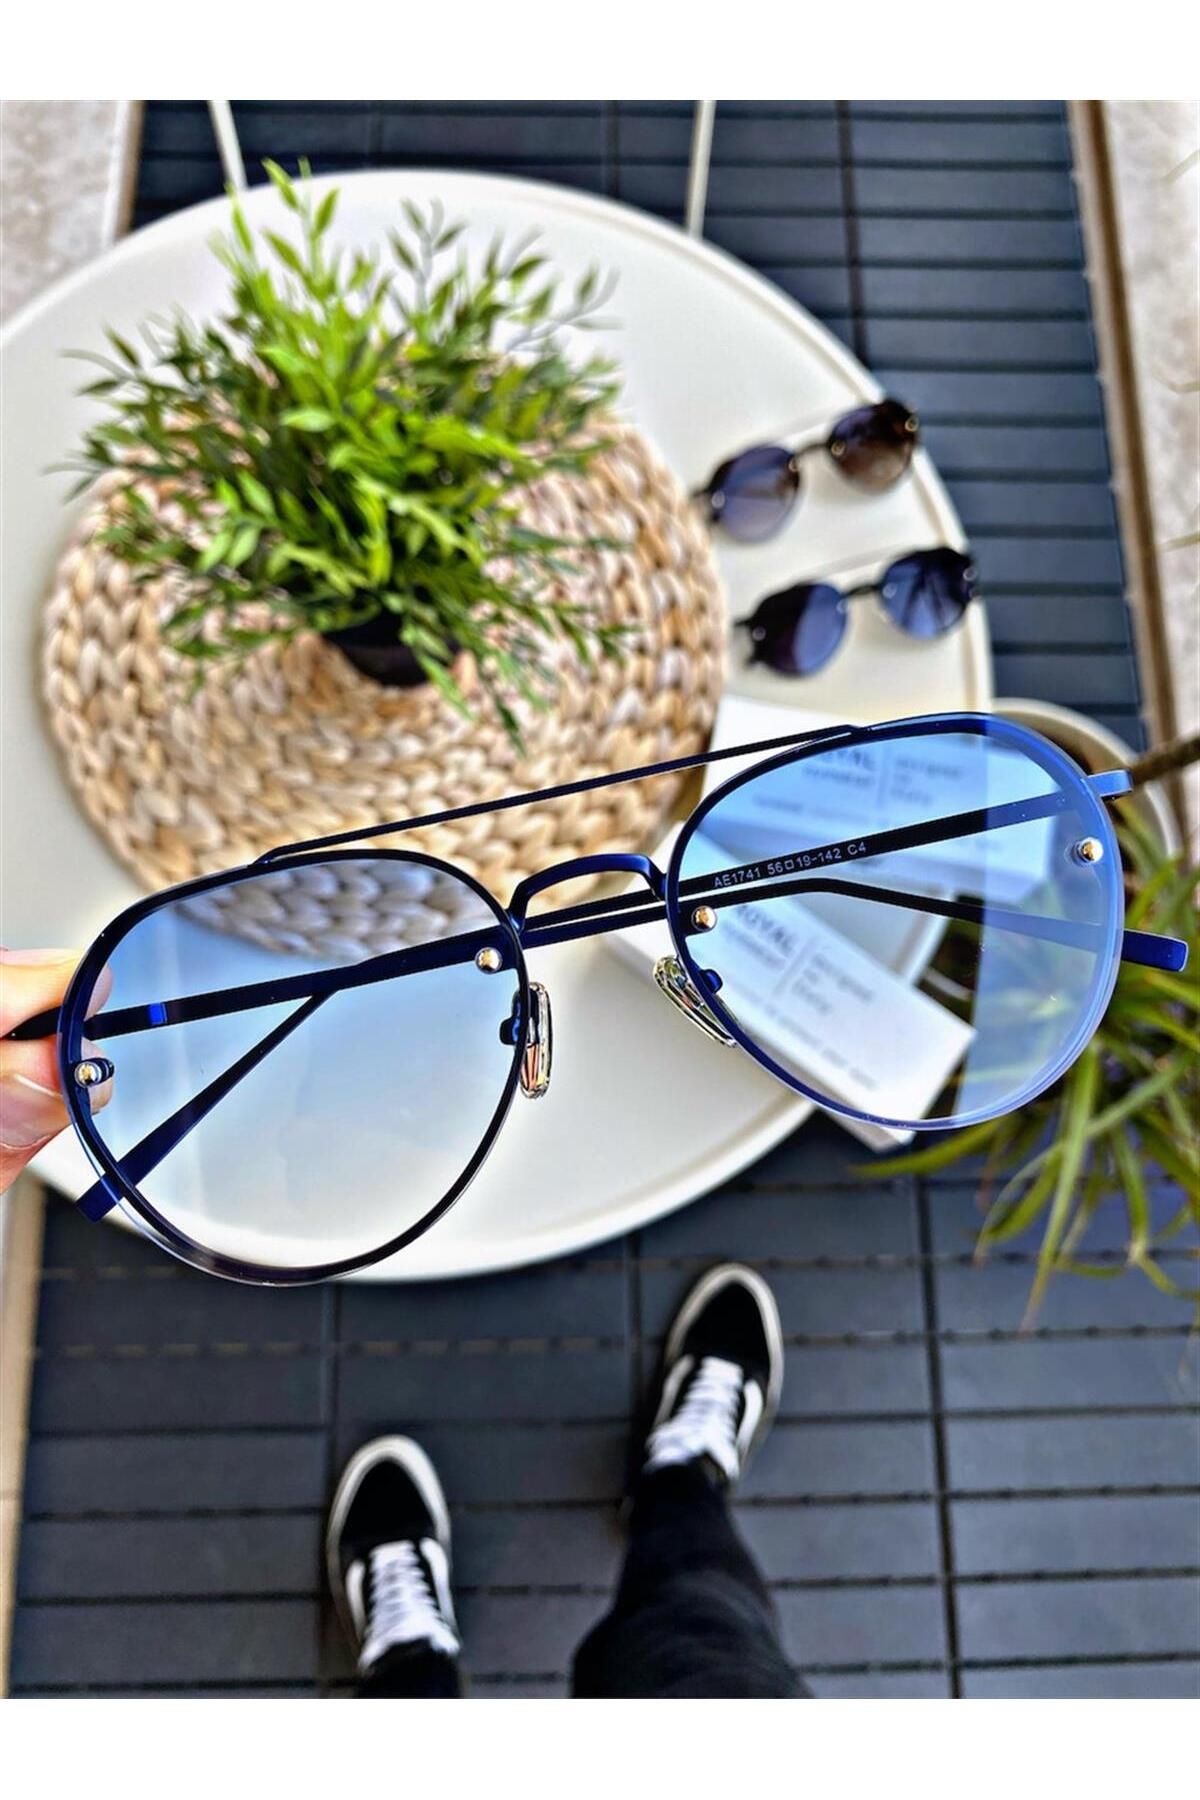 WATCHOFROYAL Güneş Gözlüğü Kadın & Erkek Uv400 Cam Ce Belgeli Mavi Chloew